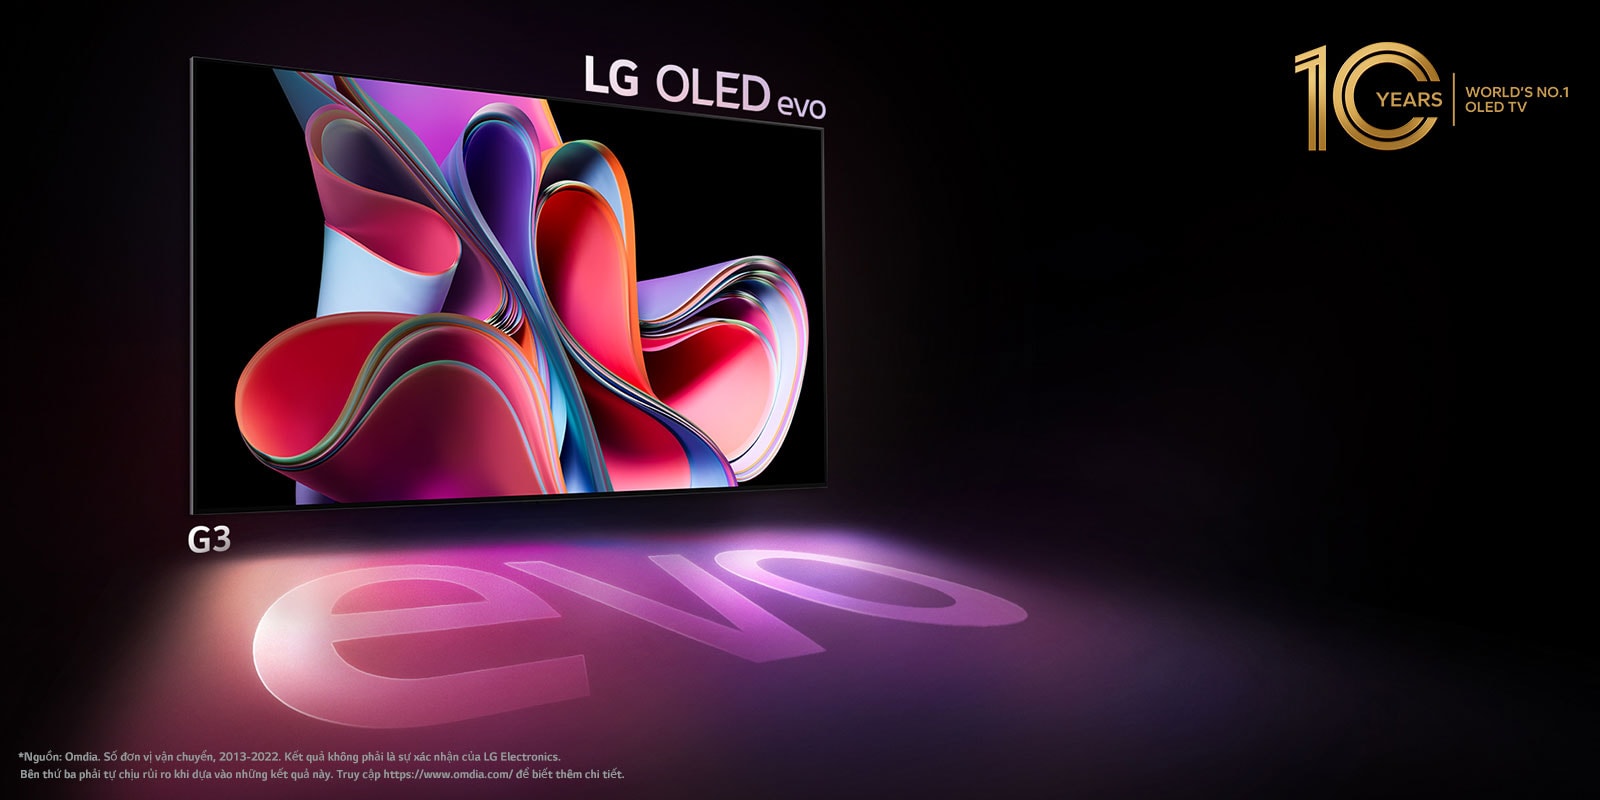 Hình ảnh LG OLED G3 trên phông nền màu đen thể hiện một tác phẩm nghệ thuật trừu tượng màu hồng tươi và màu tím. Màn hình thể hiện sự đổ bóng đầy màu sắc có từ "evo". Biểu tượng "TV OLED 10 năm số 1 thế giới" nằm ở góc trên bên trái của hình ảnh. 